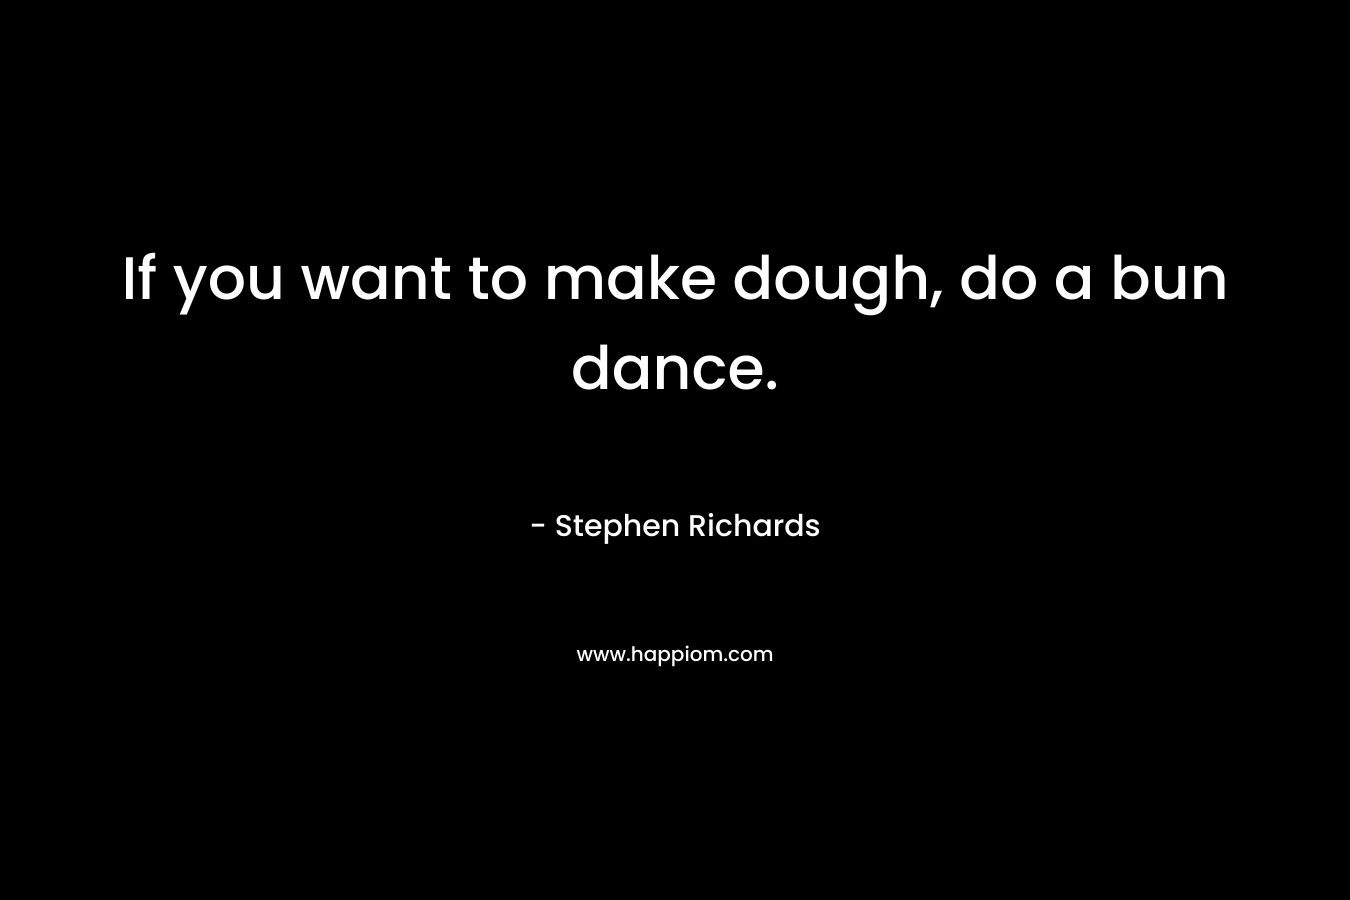 If you want to make dough, do a bun dance.